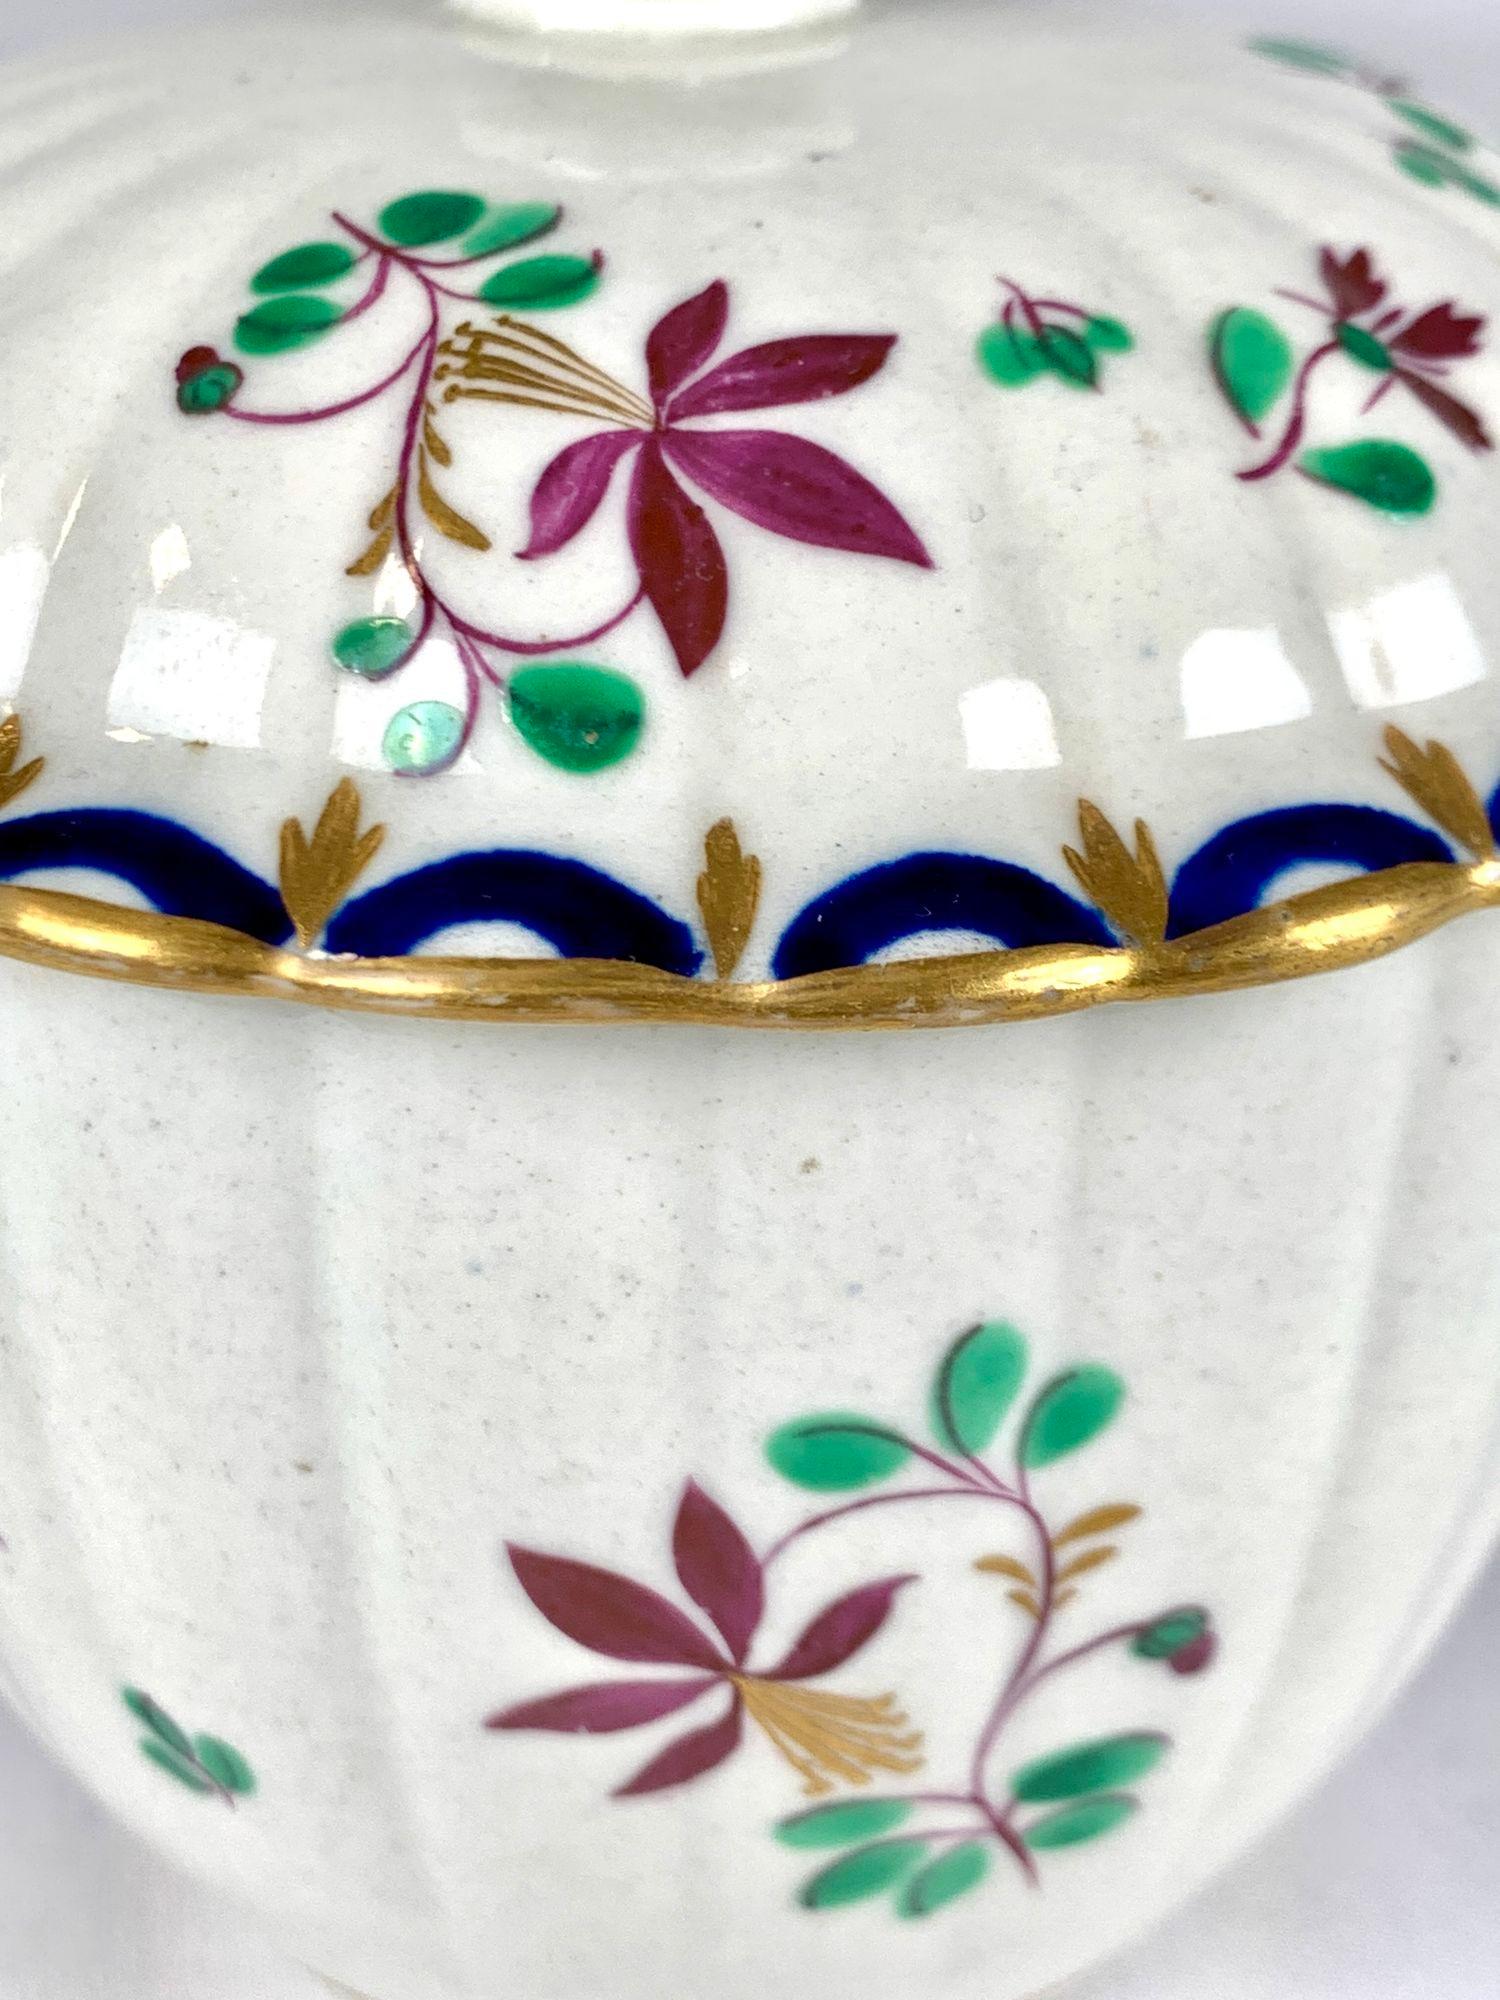 Il s'agit d'une boîte à sucre en porcelaine de Worcester de la première période, peinte à la main et datant du XVIIIe siècle.
Le motif floral vivant est peint en vert, bleu, violet et doré.
Nous voyons des tiges et des fleurs violettes avec des